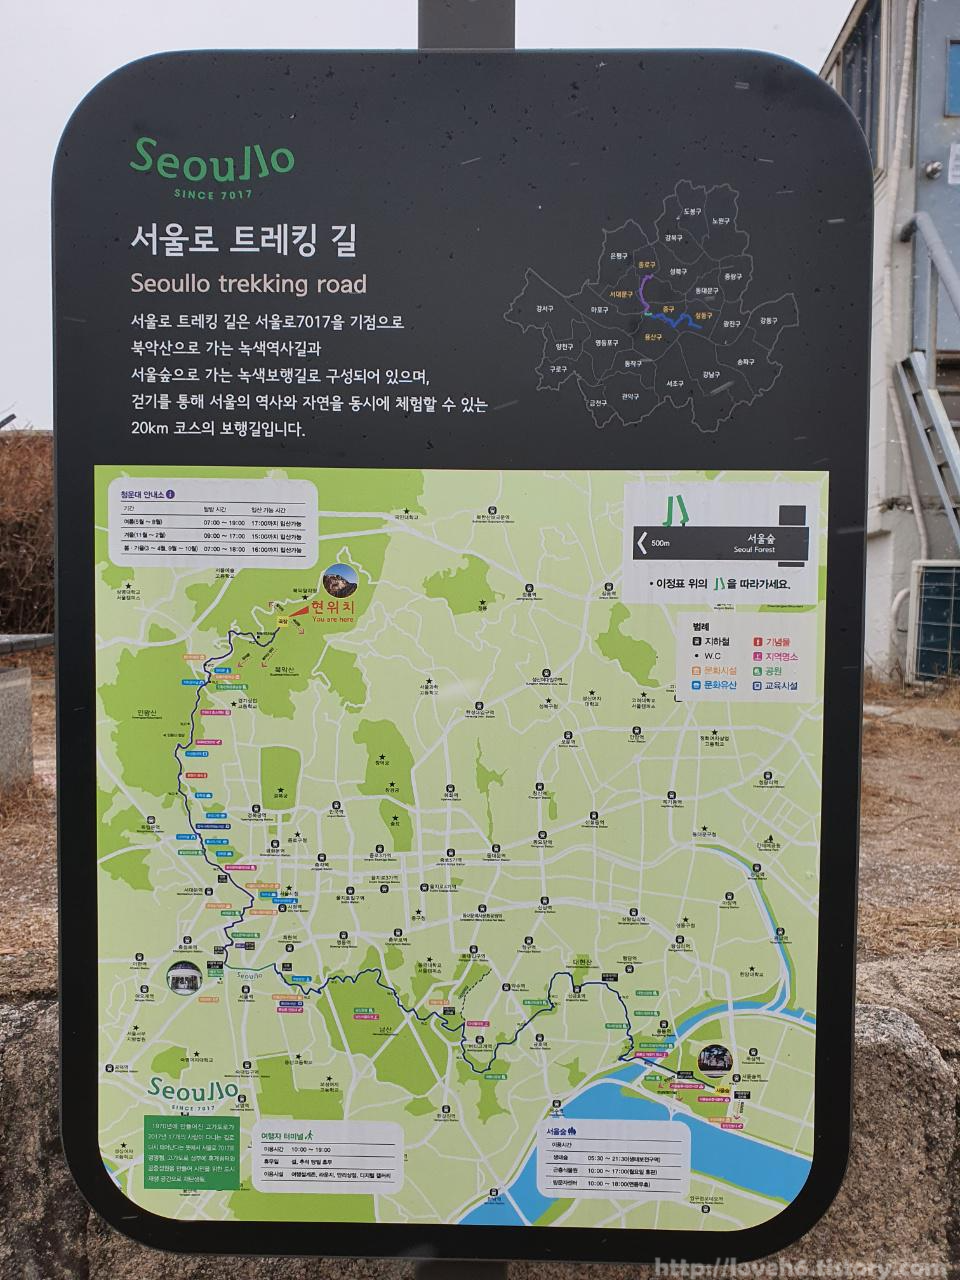 북악산_北岳山_Bukaksan/팔각정으로 가려면 일단 

곡장안내소로 가야합니다

가는길에 서울로 트레킹 길에 대한

안내문과 지도가 있습니다

서울숲까지 연결되어 있어요

서울숲까지 걸어가면 살이 쭉쭉

빠져서 서울술 도착할때쯤이면

홀쭉이가 되어있겠는걸요^^;